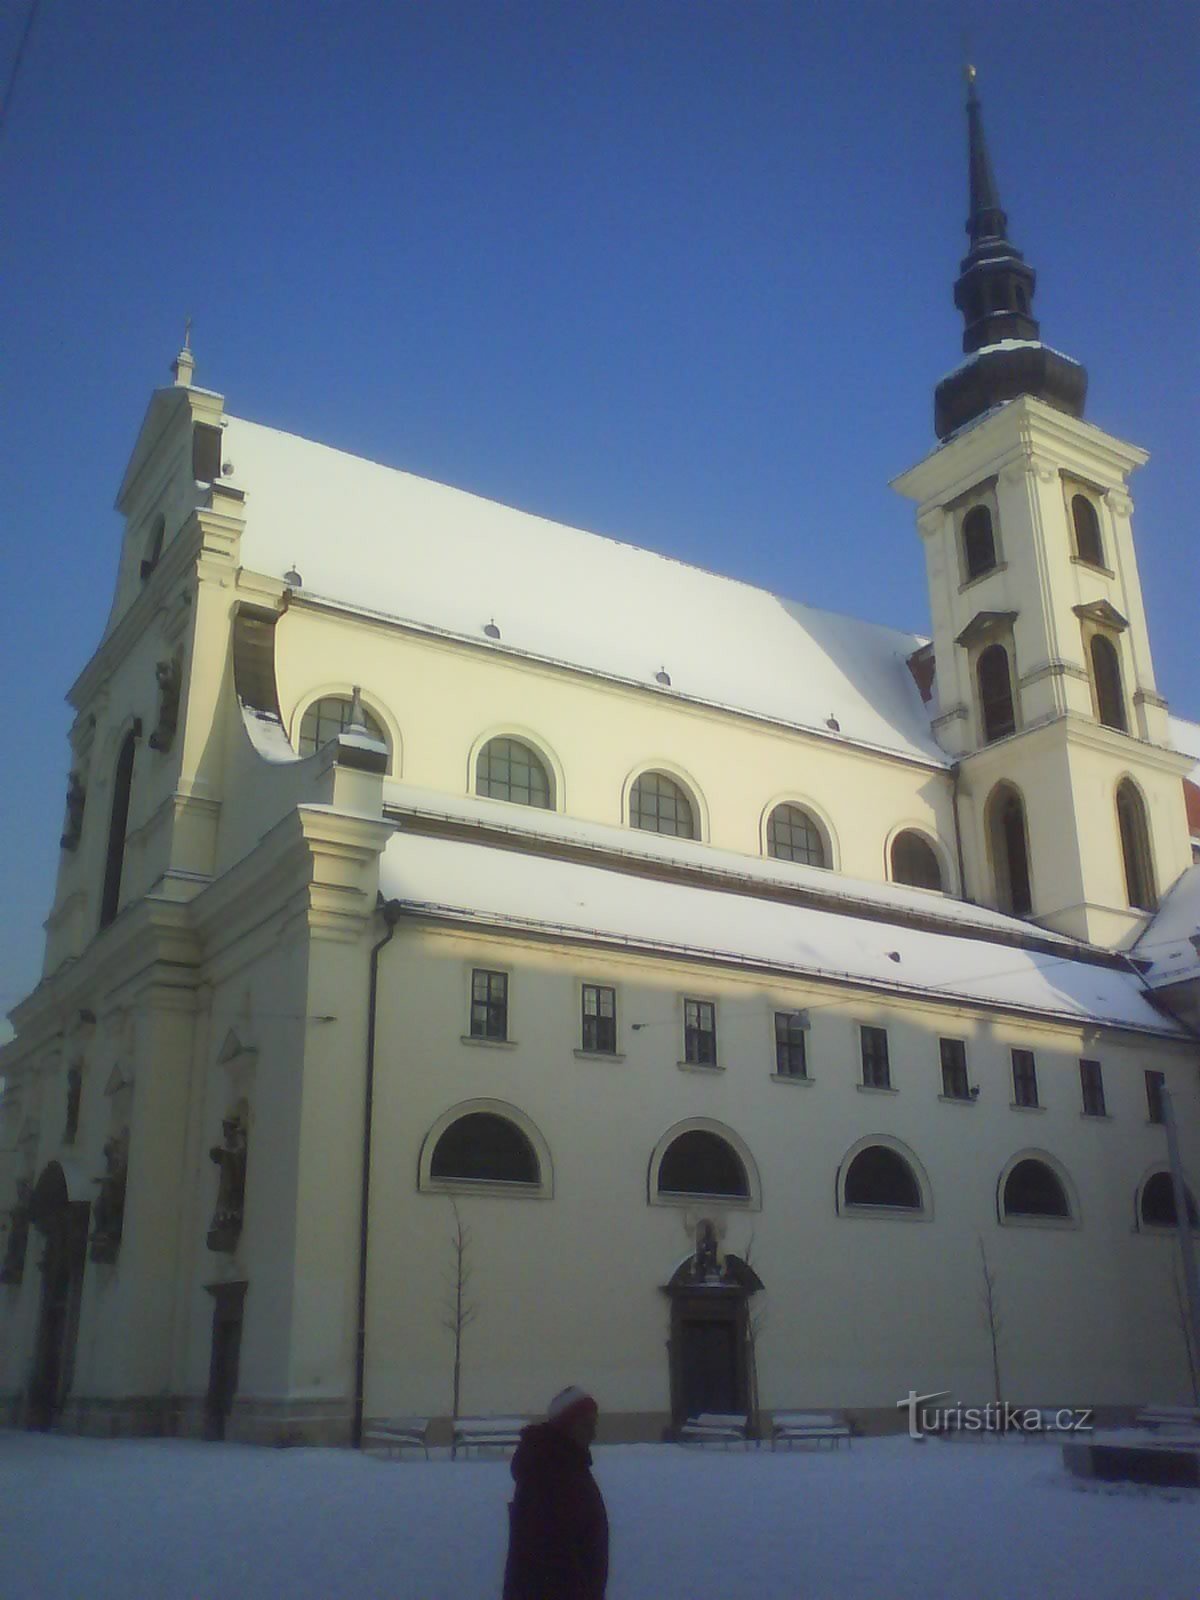 kirken St. Tomas i Brno